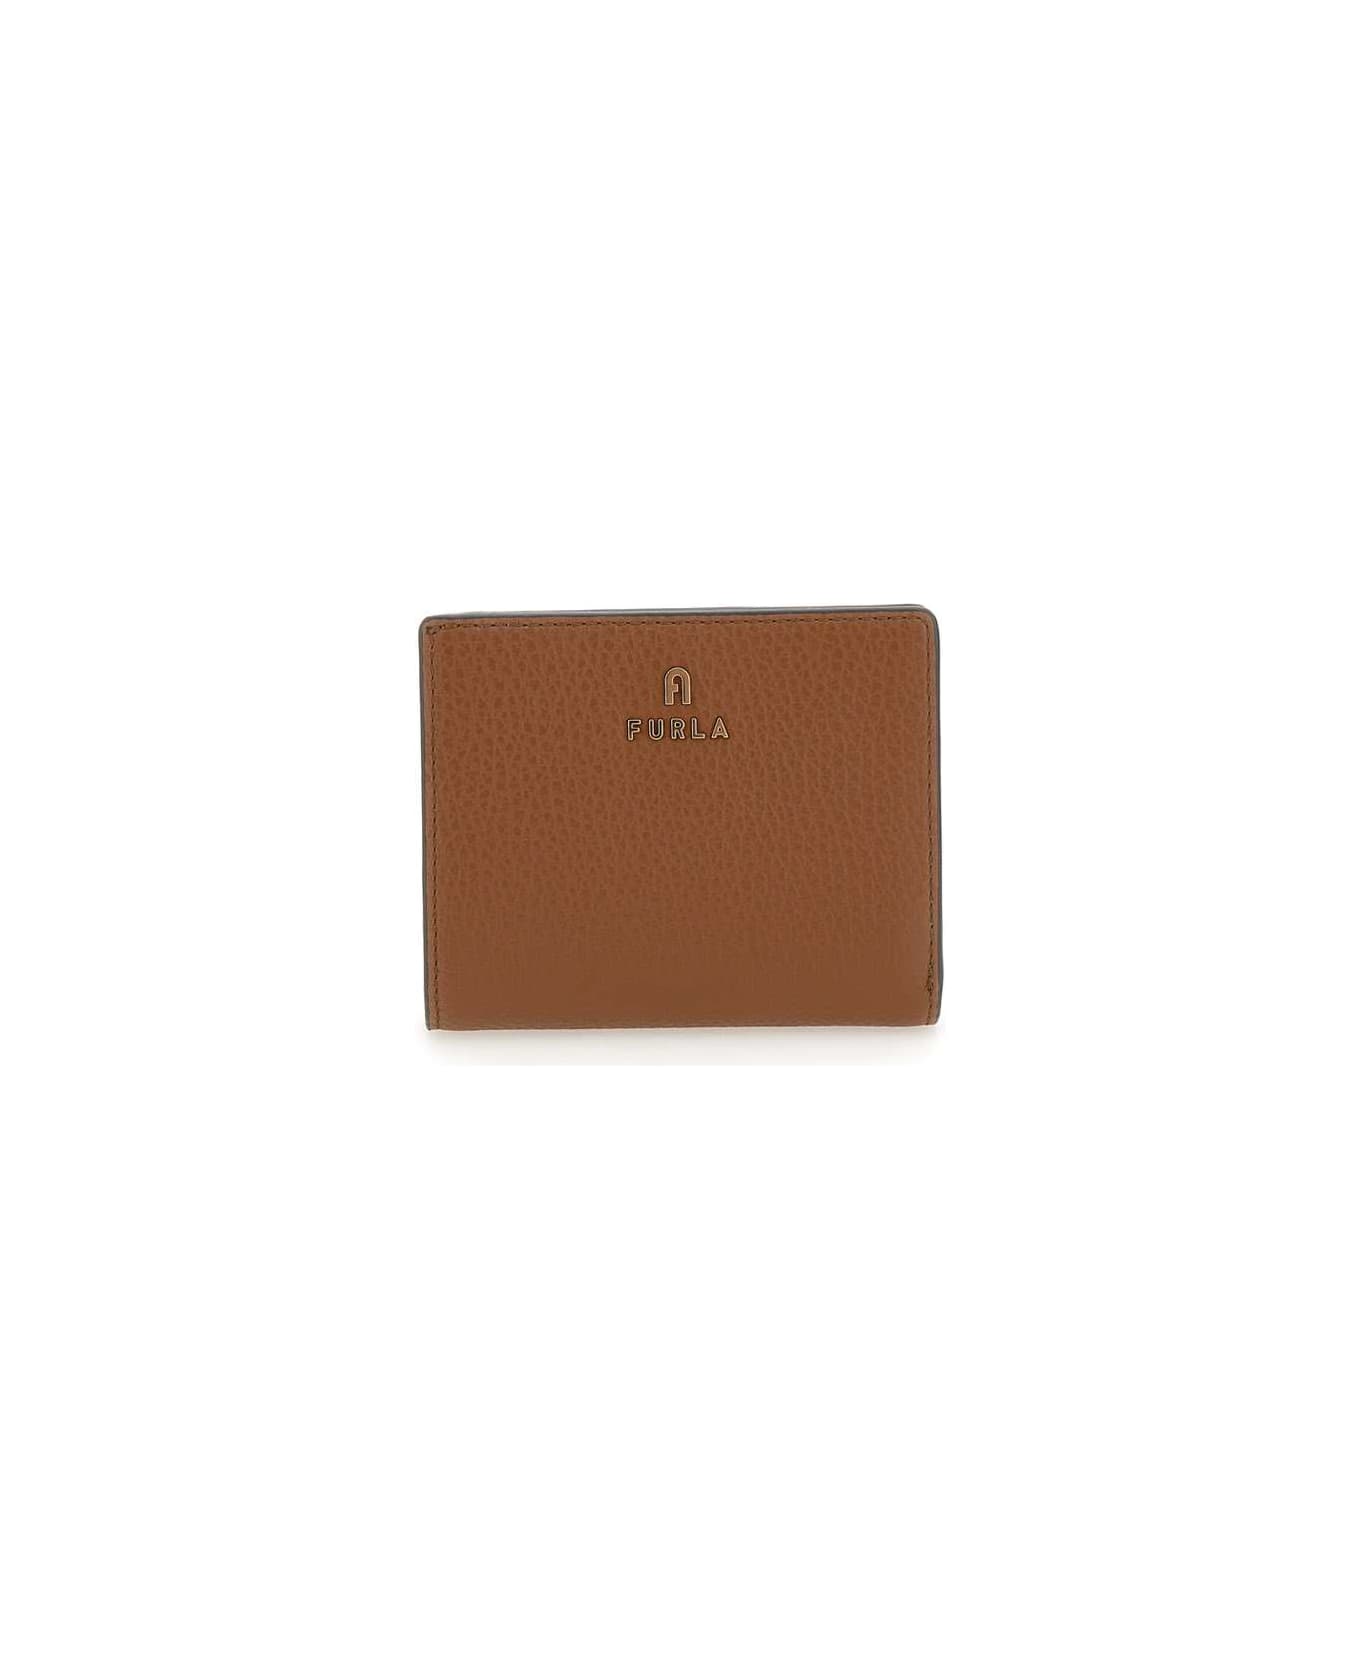 Furla 'camelia' Leather Wallet - Marrone 財布